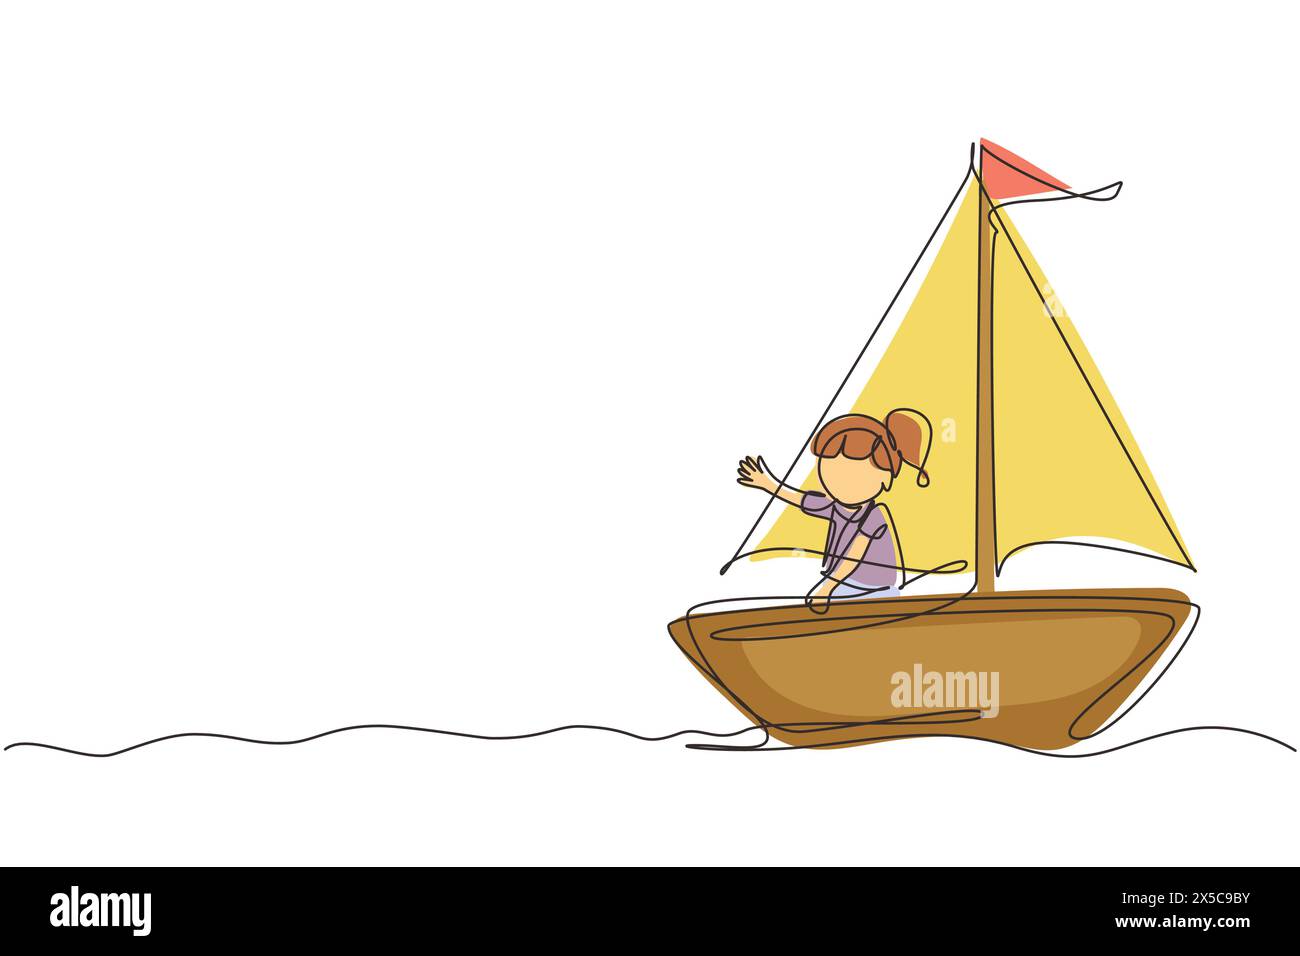 Eine einzelne durchgehende Linienzeichnung lächelndes kleines Mädchen im Segelboot. Glückliche Kinder, Segelboote. Süße kleine Kinder auf dem Boot. Fröhliche Abenteuer und Reisen. Stock Vektor